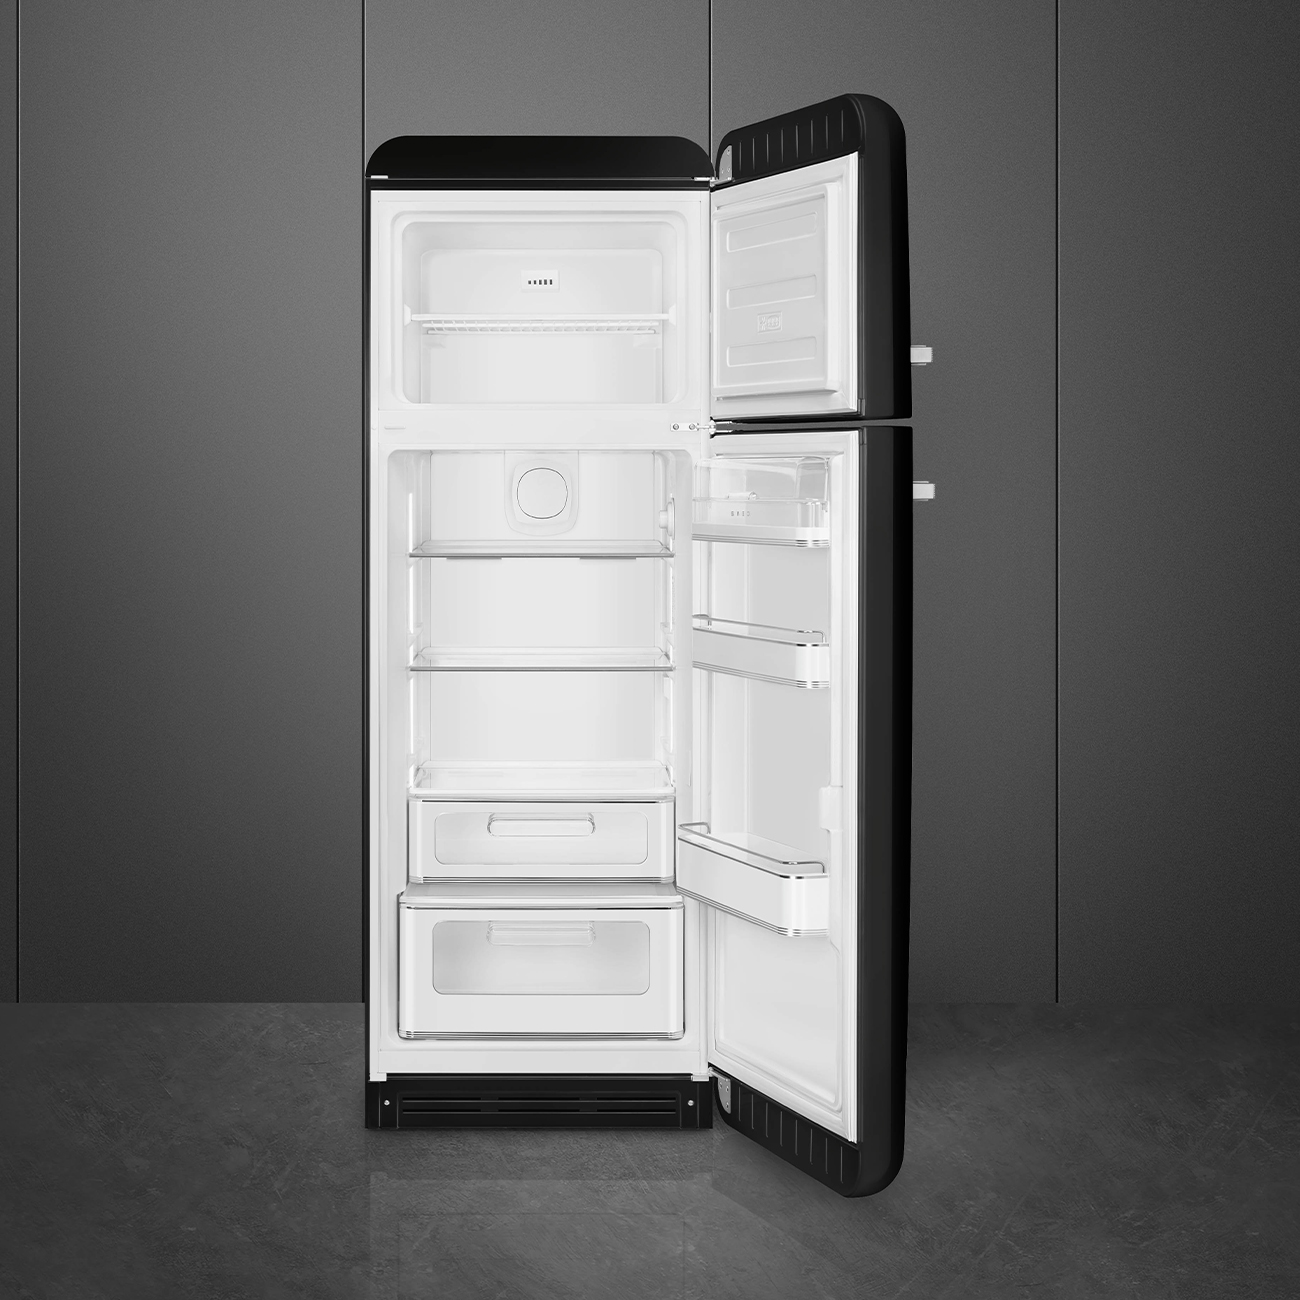 Black refrigerator - Smeg_6